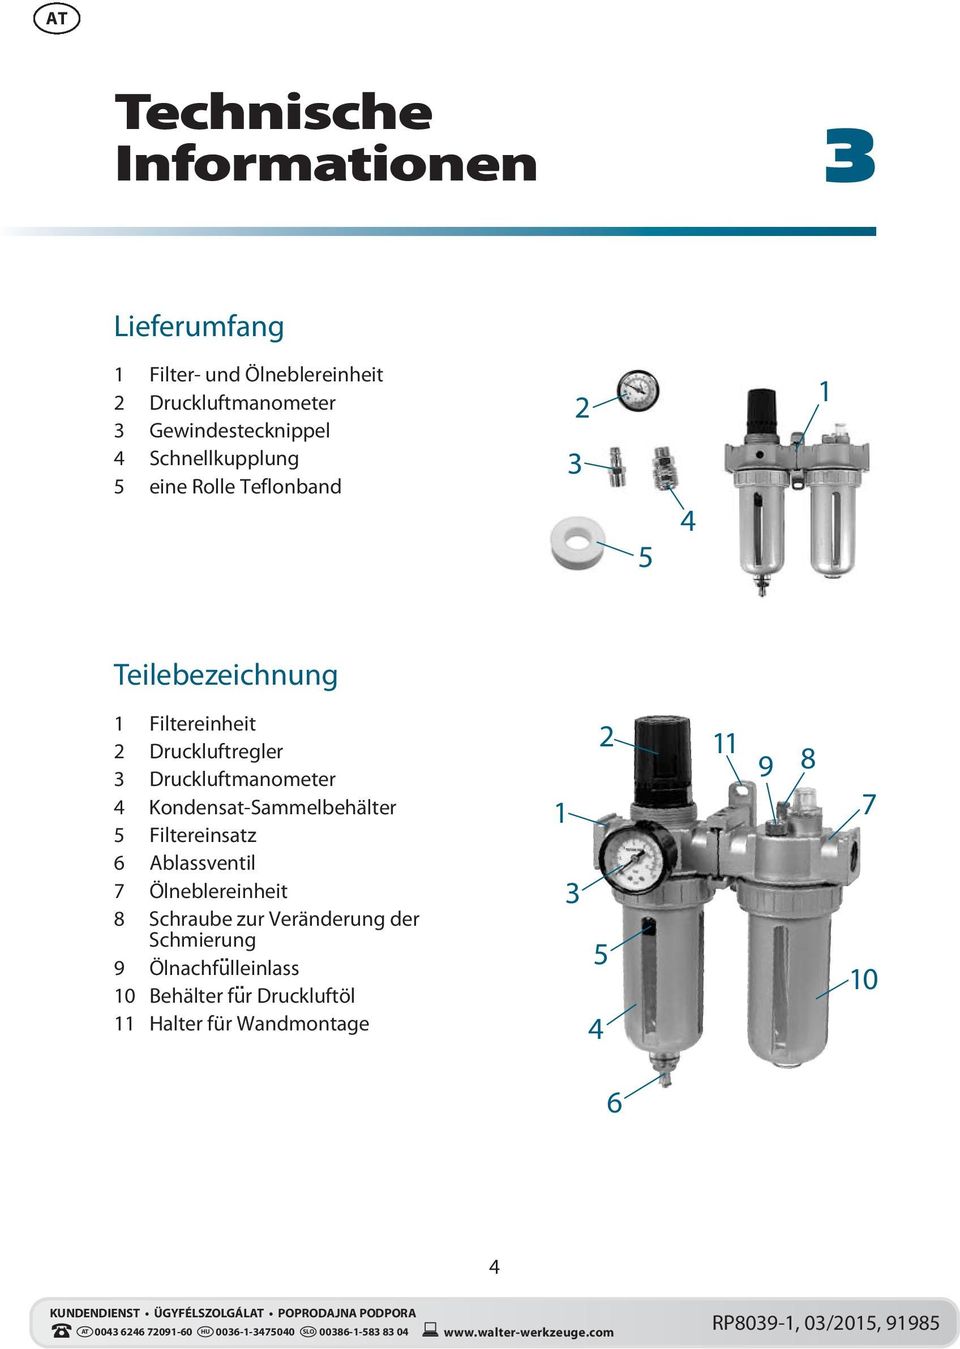 Druckluftregler 3 Druckluftmanometer 4 Kondensat-Sammelbehälter 5 Filtereinsatz 6 Ablassventil 7 Ölneblereinheit